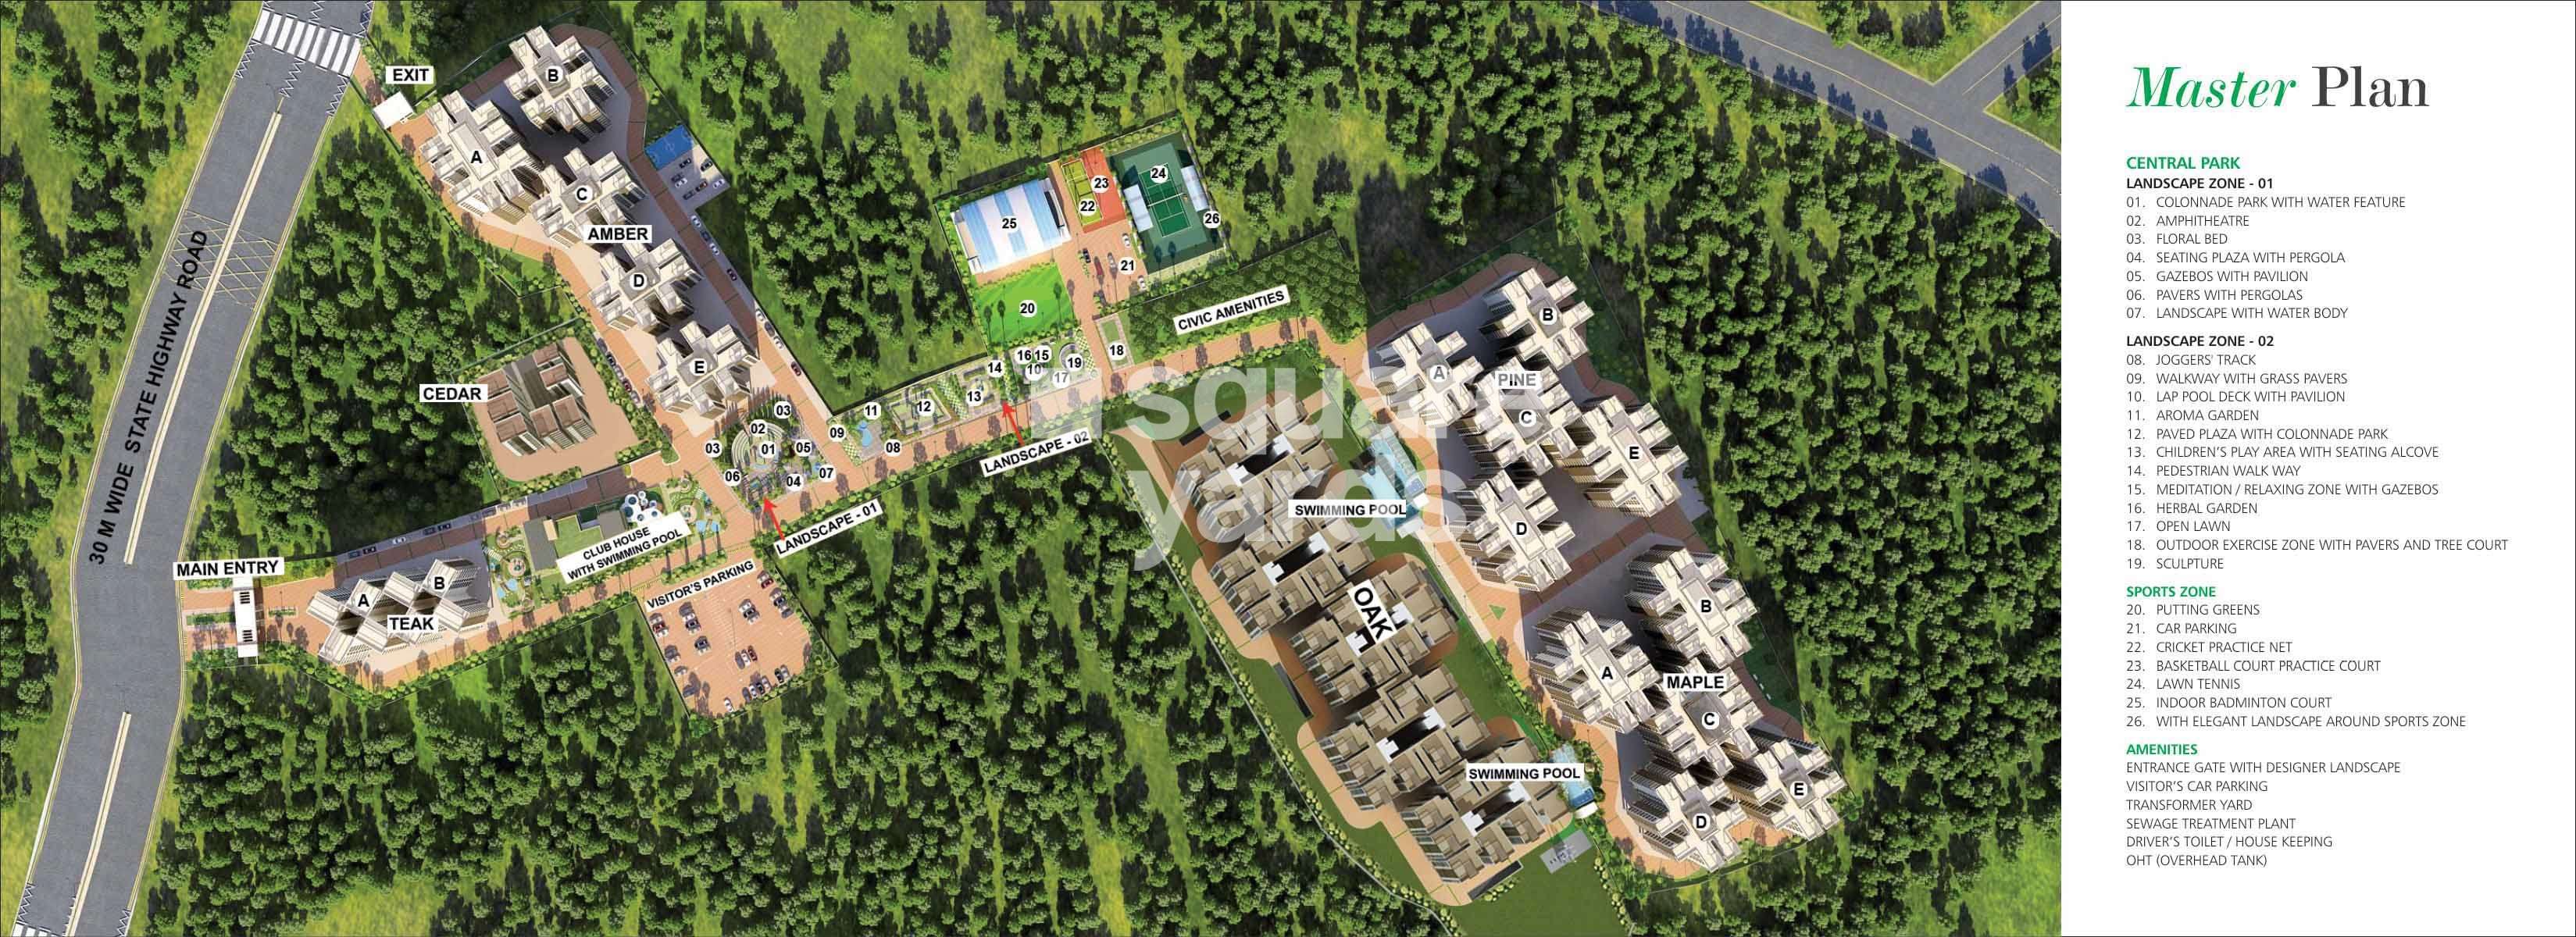 indya estates the greens master plan image3